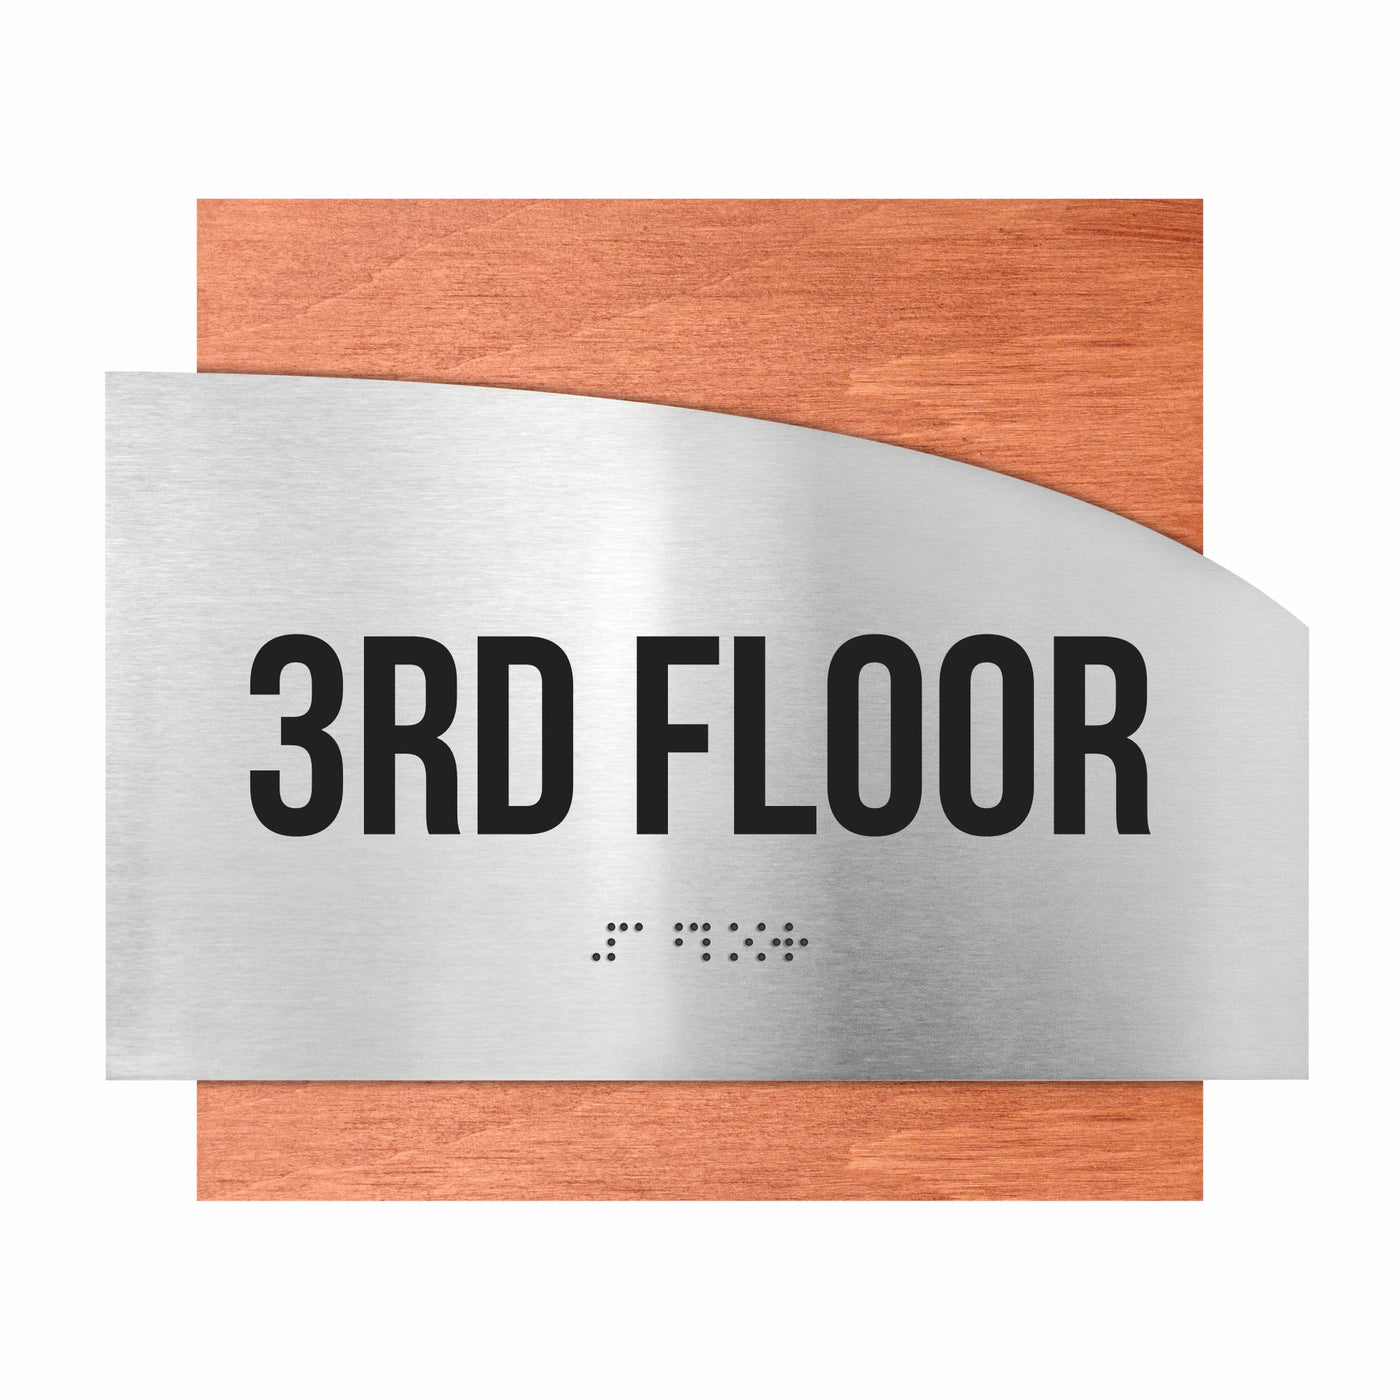 Floor Signs - Steel Sign For 3rd Floor "Wave" Design